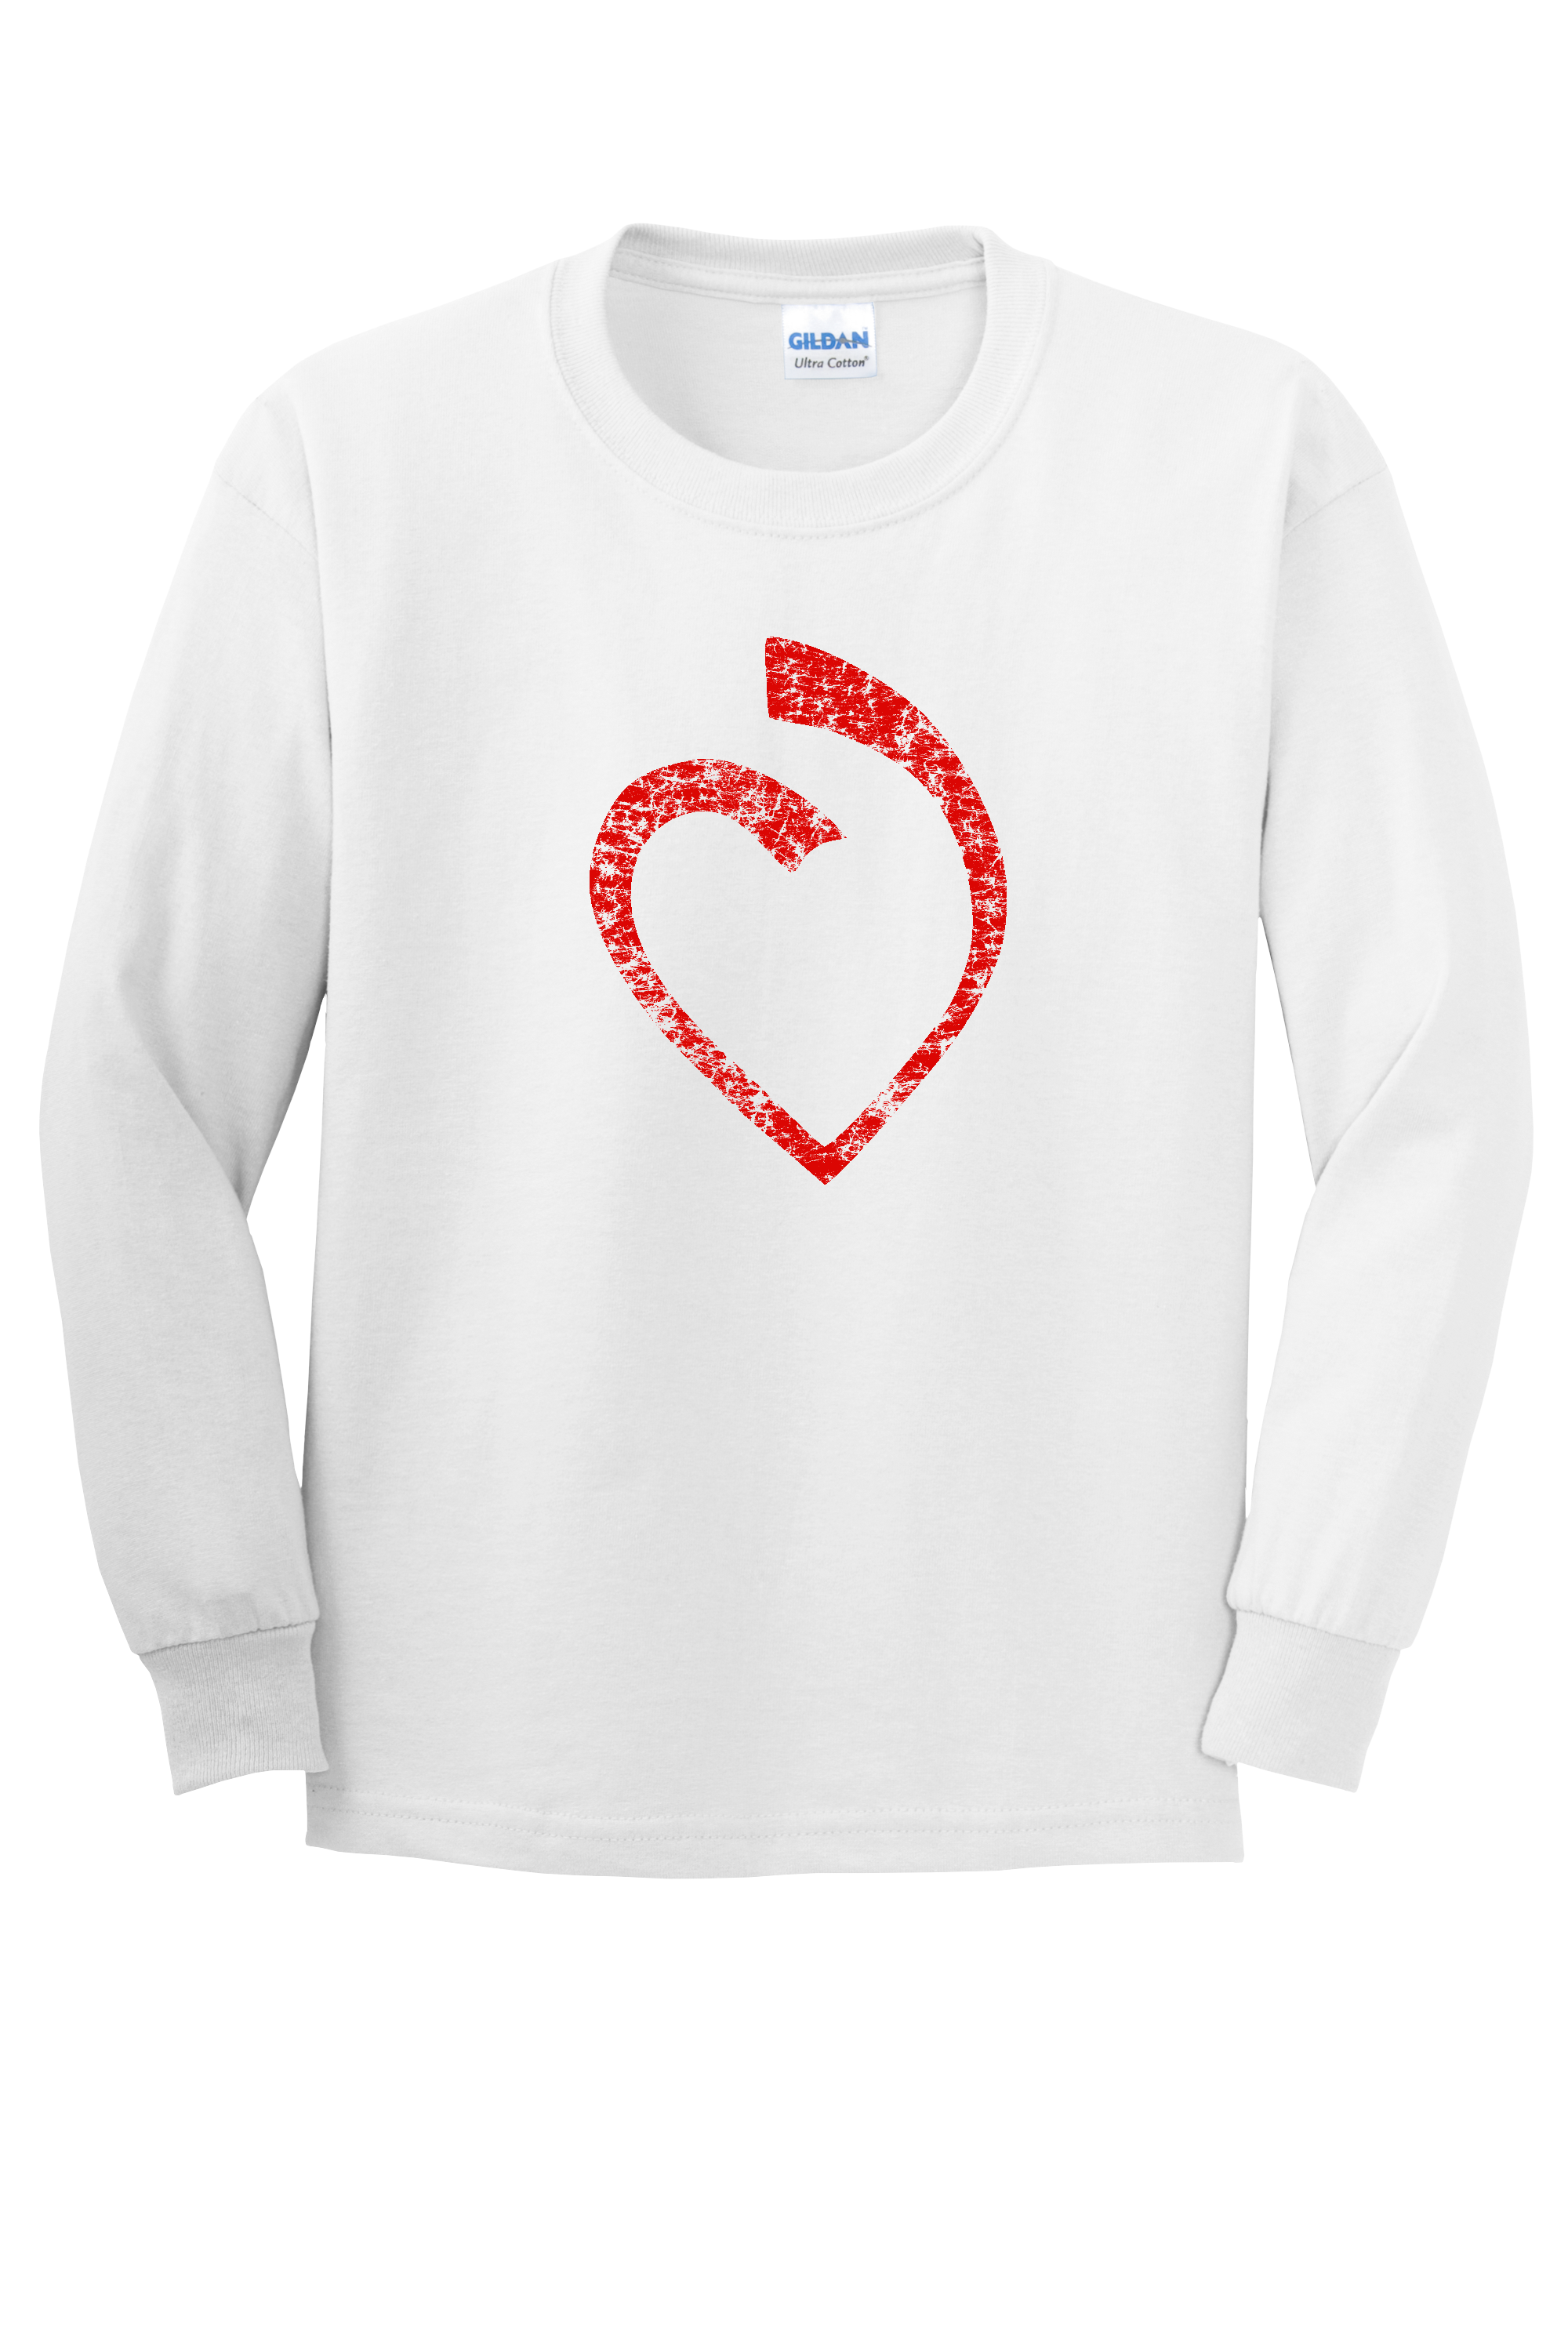 SHA Cotton L/S Heart T-Shirt -WHITE